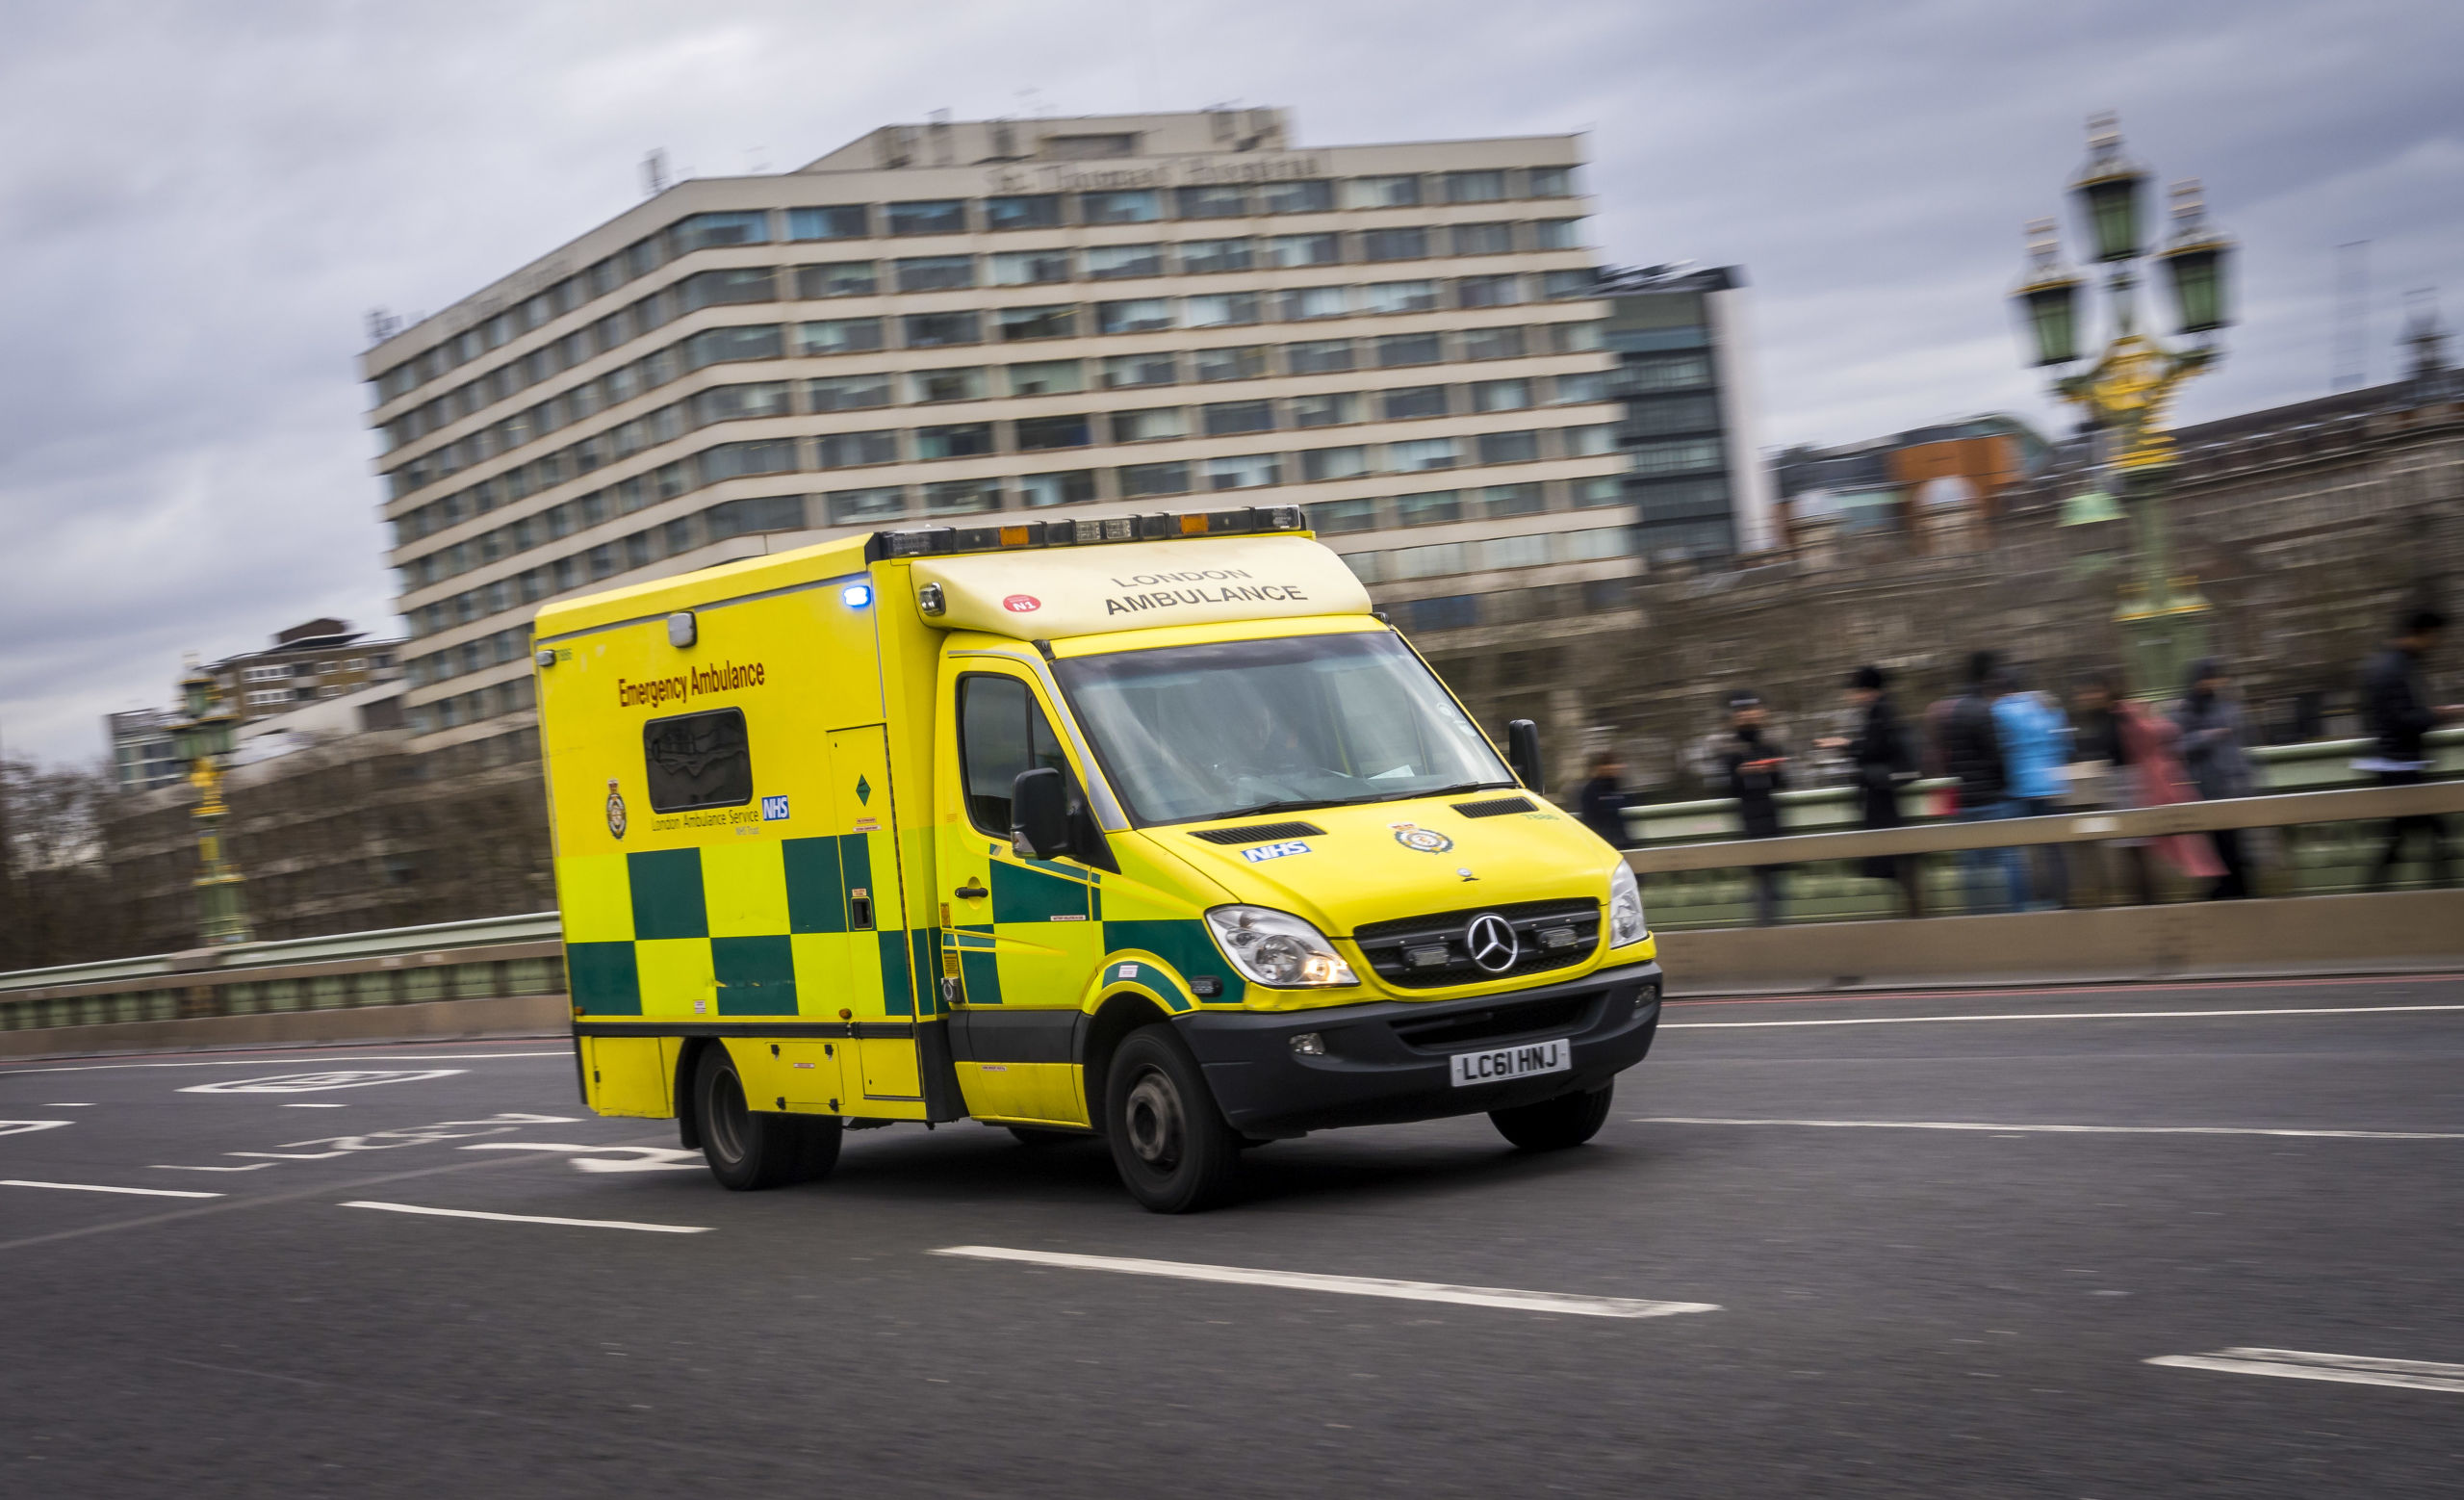 2020-02-04 14:15:14 LONDEN - Ambulance in Londen. ANP LEX VAN LIESHOUT